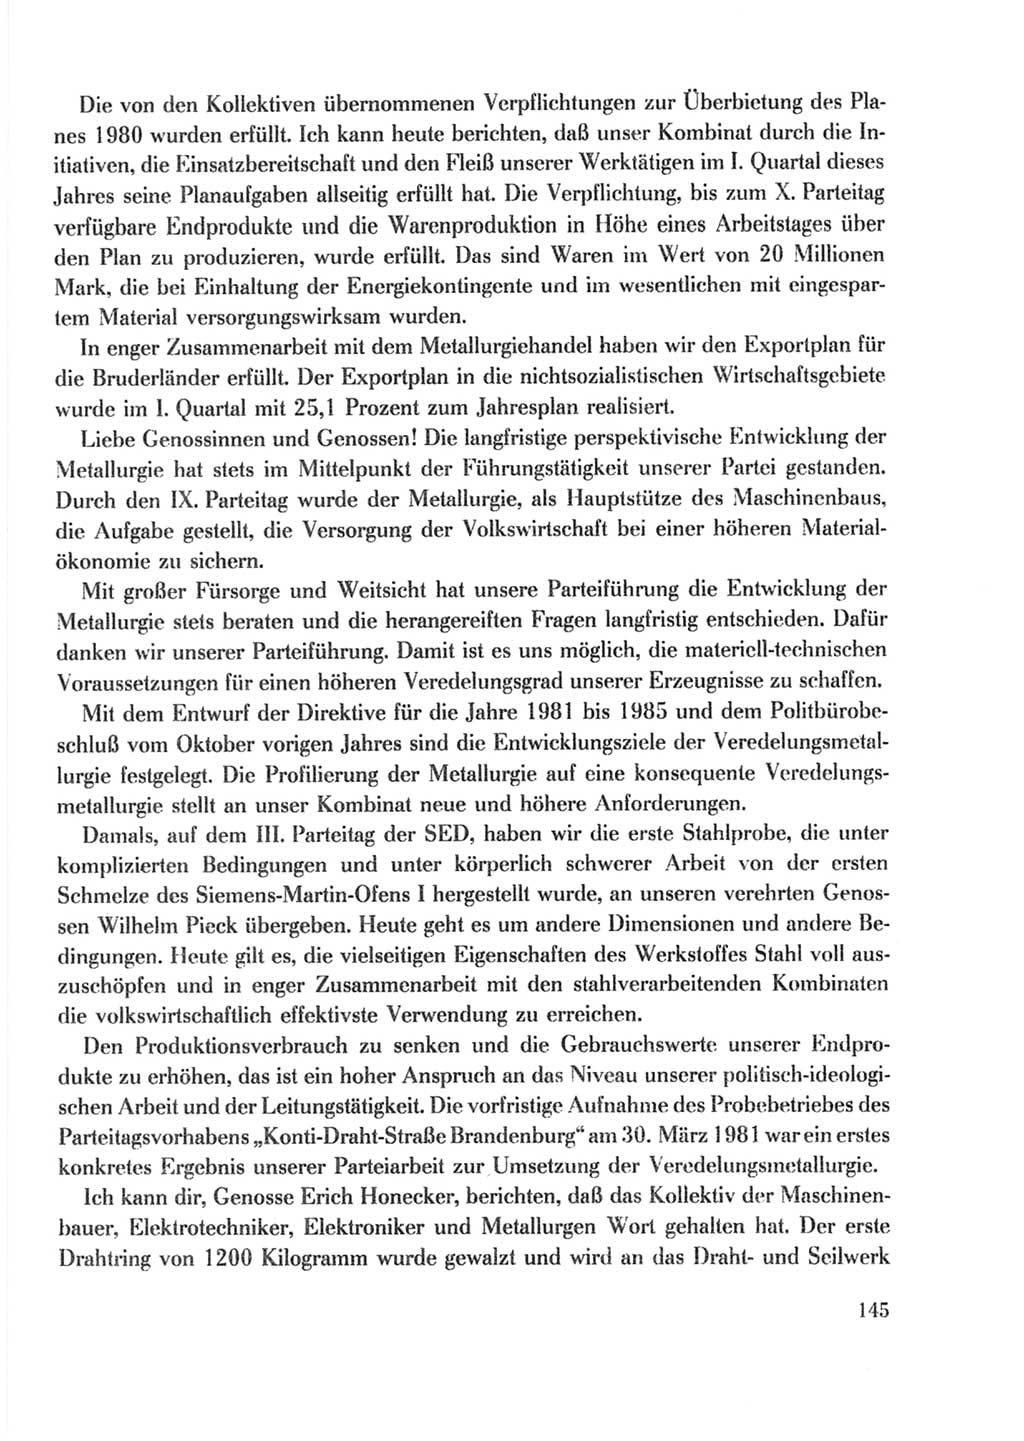 Protokoll der Verhandlungen des Ⅹ. Parteitages der Sozialistischen Einheitspartei Deutschlands (SED) [Deutsche Demokratische Republik (DDR)] 1981, Band 2, Seite 145 (Prot. Verh. Ⅹ. PT SED DDR 1981, Bd. 2, S. 145)